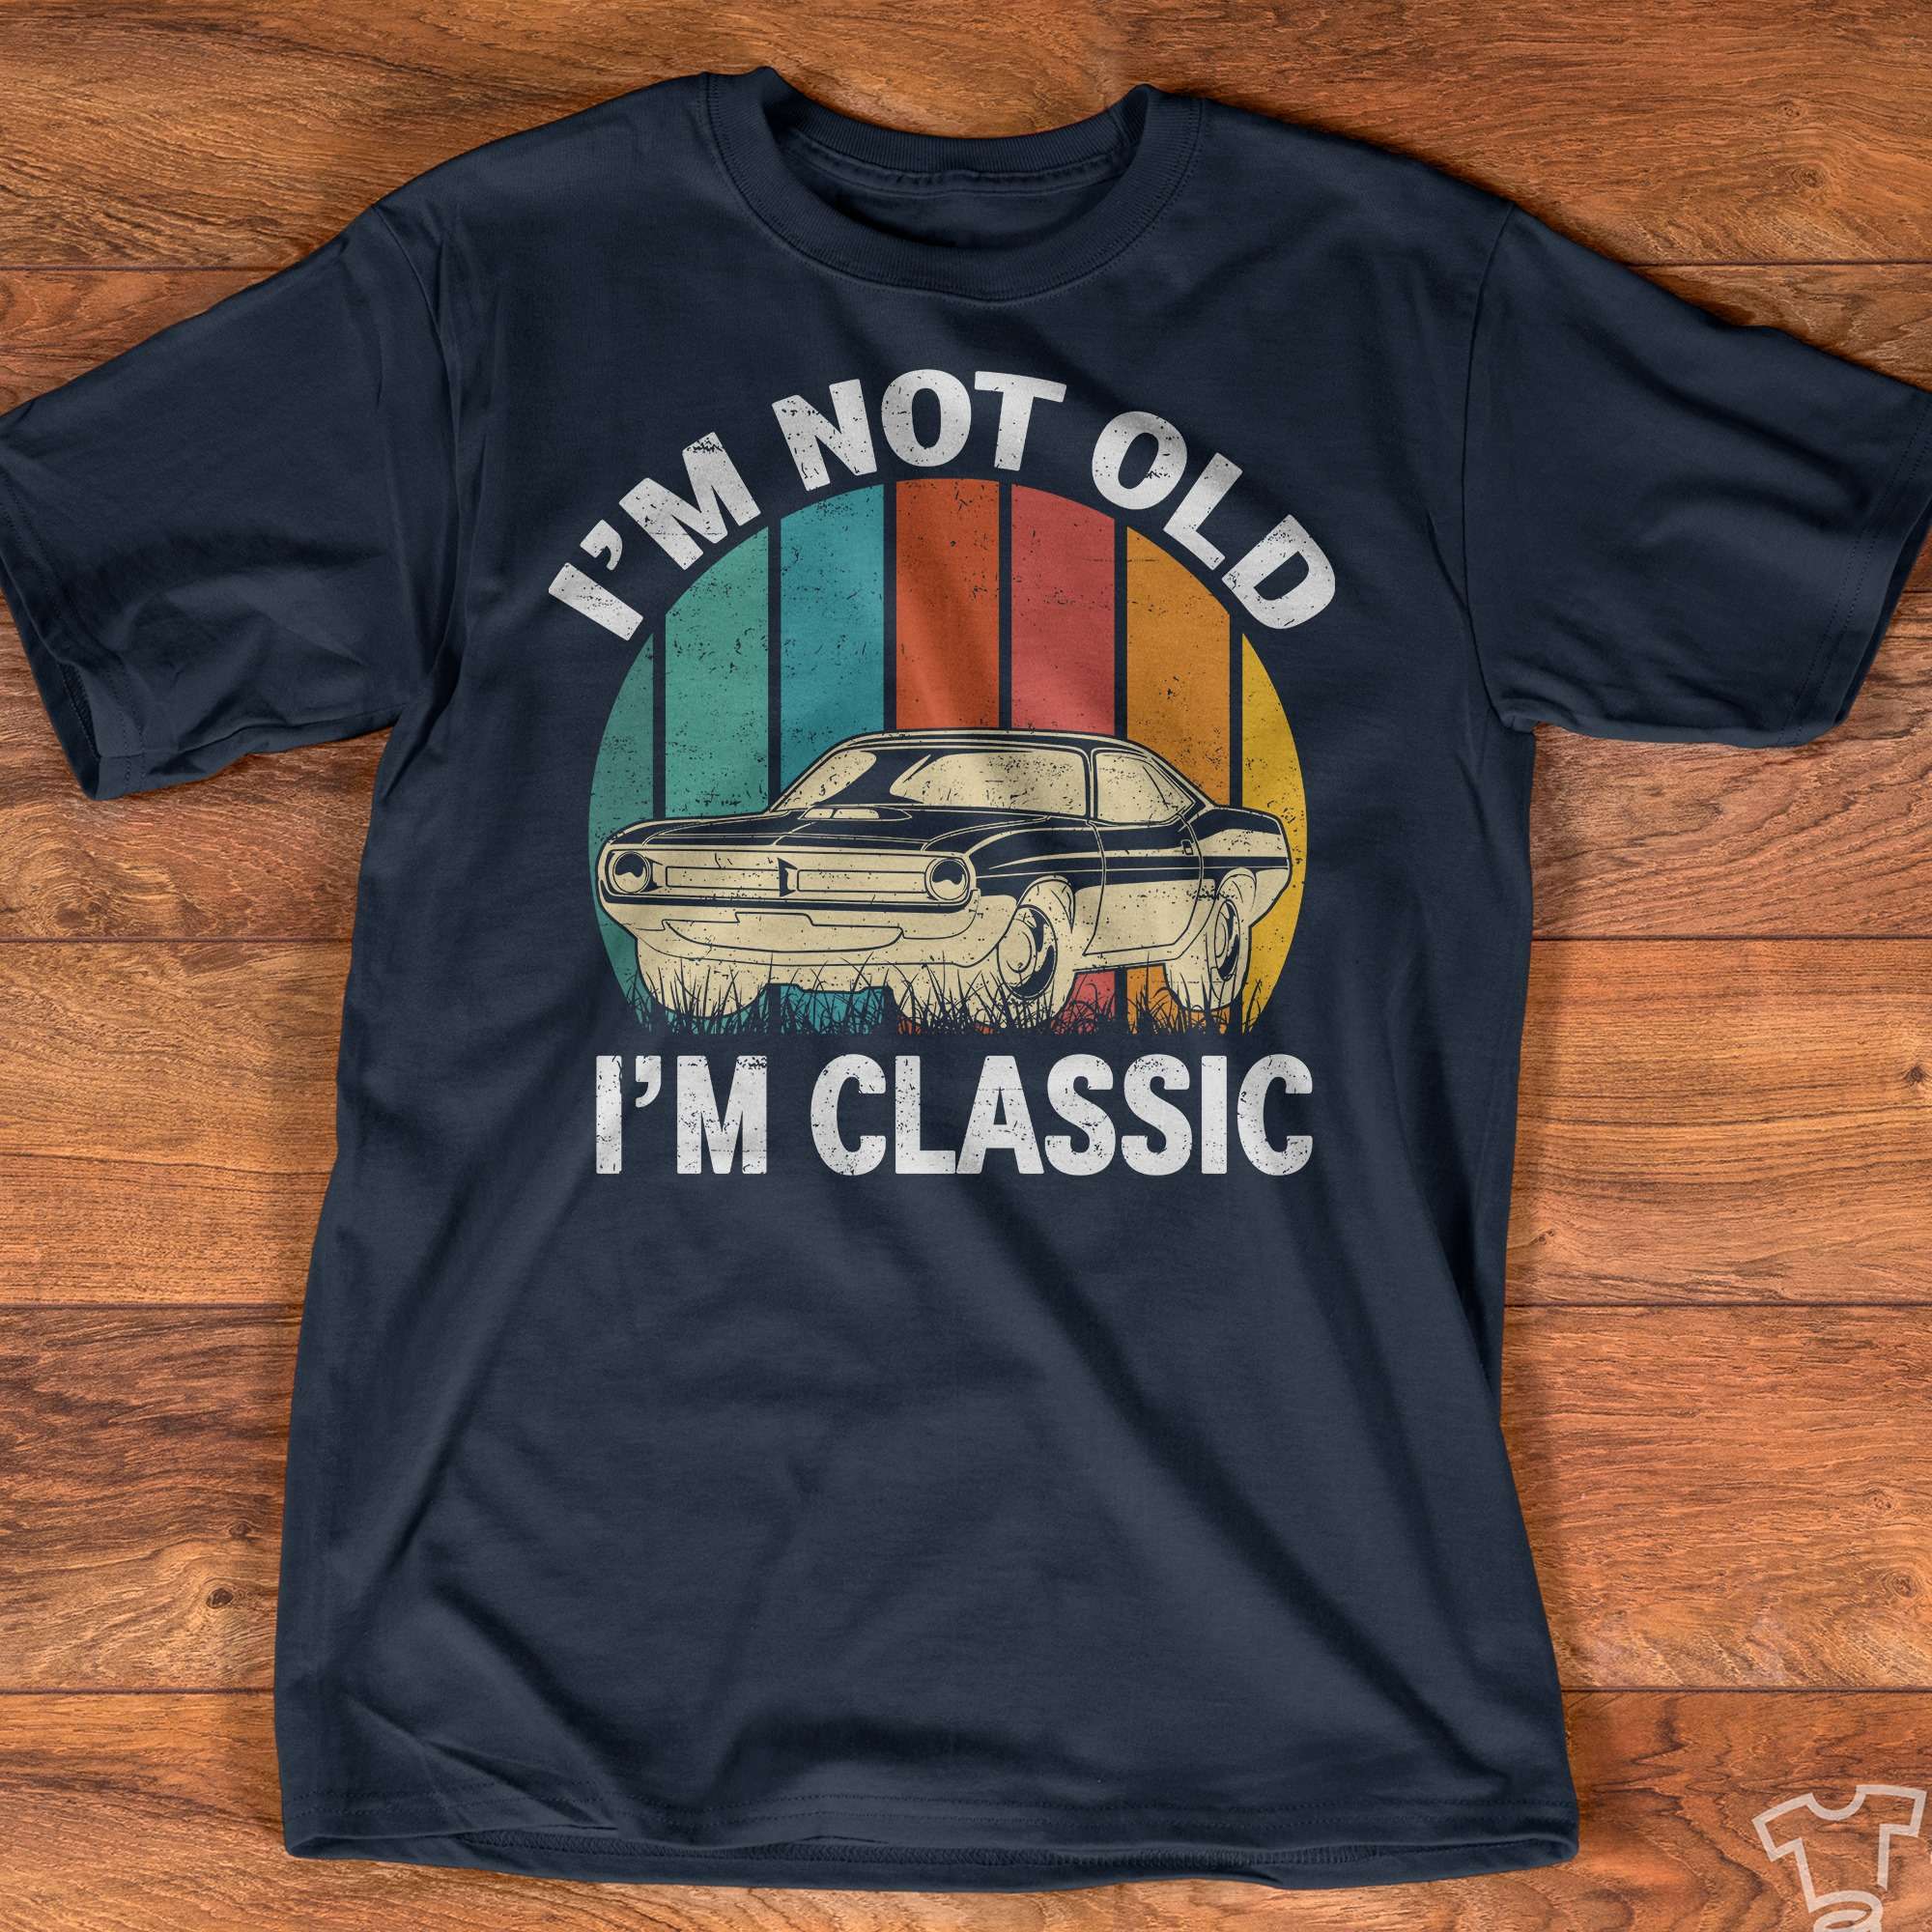 I'm not old I'm classic - Classic Car